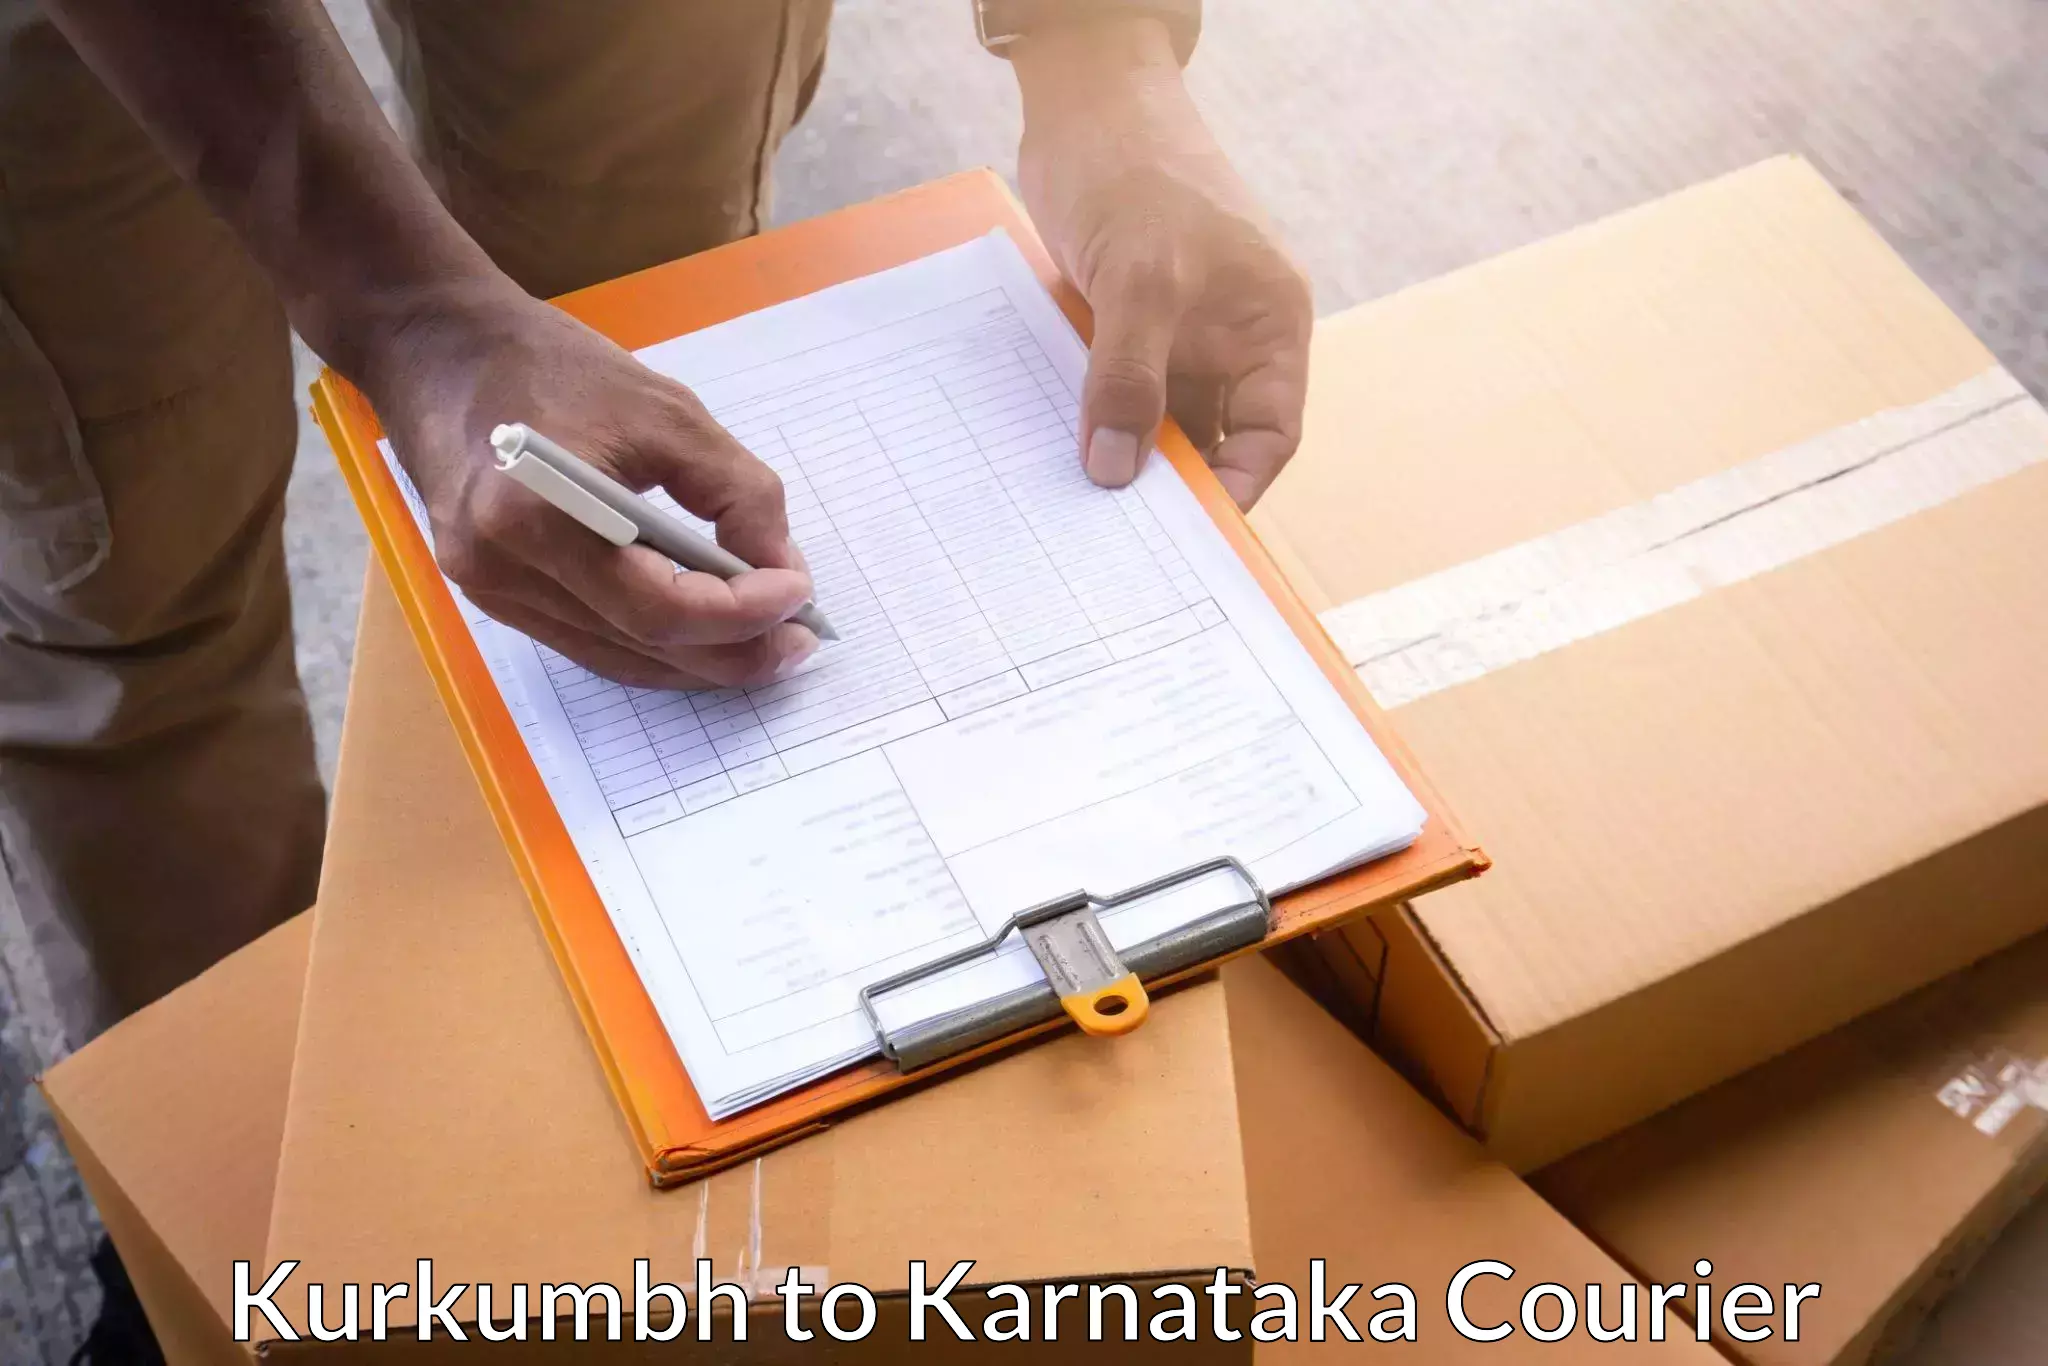 Express package services Kurkumbh to Karnataka